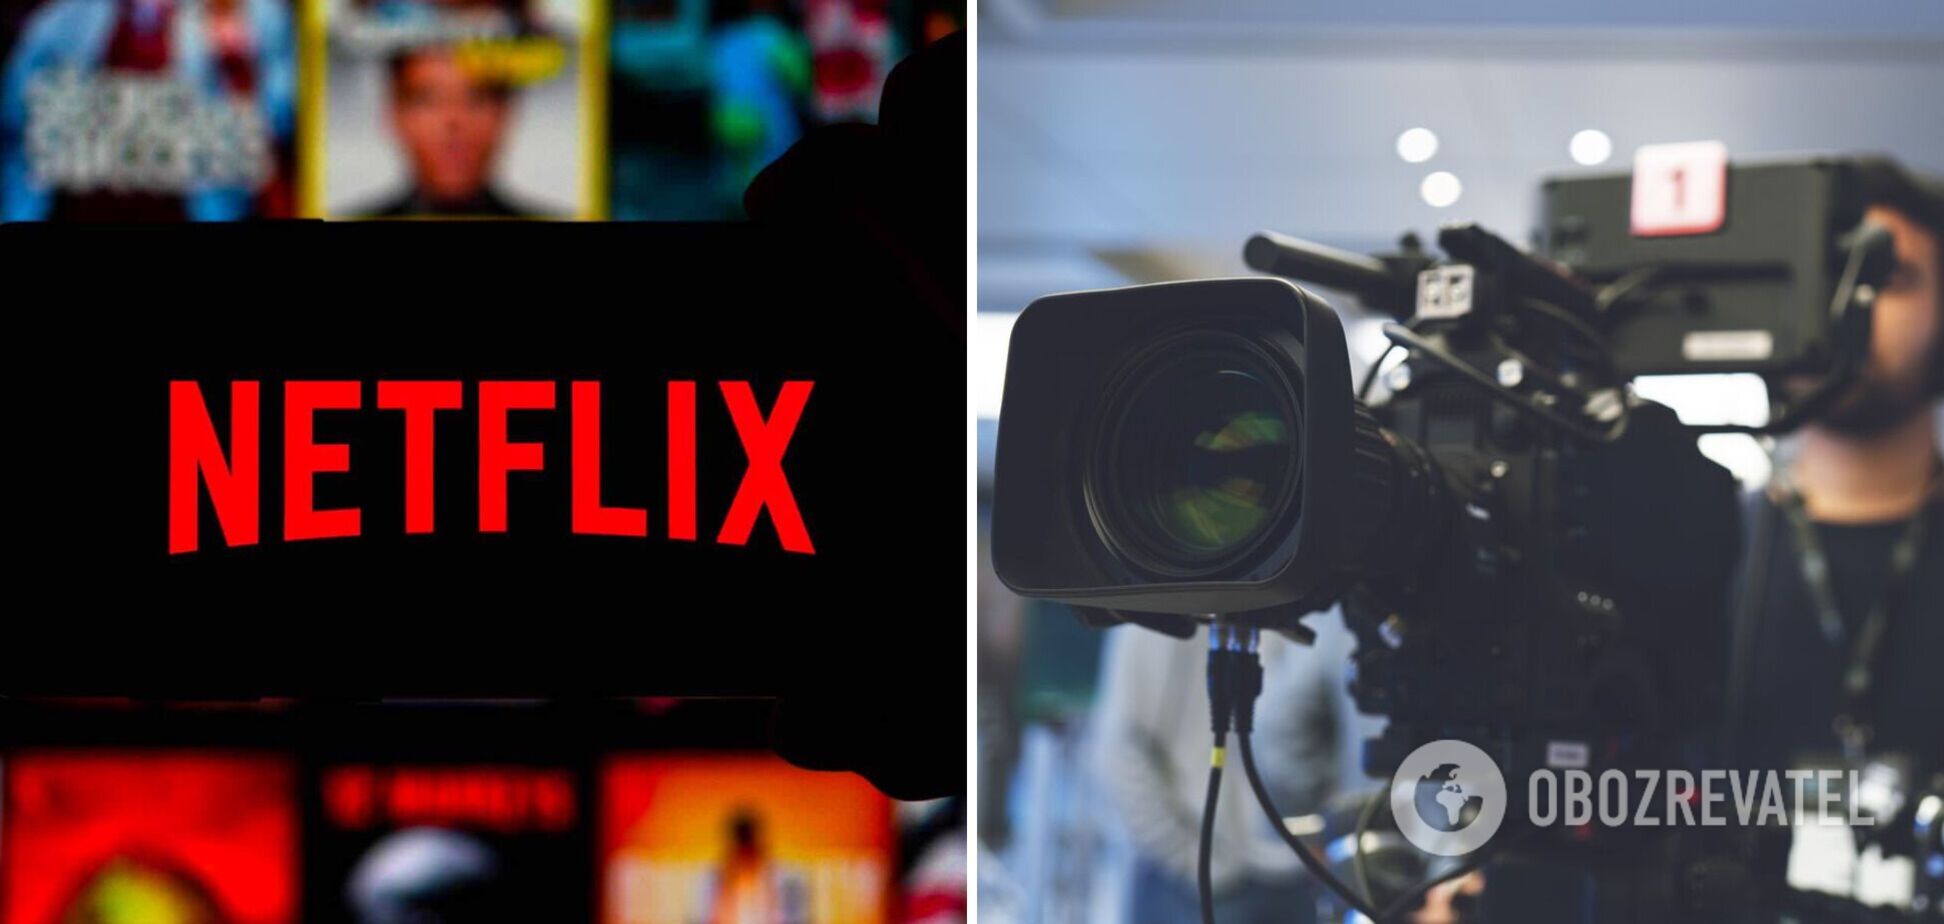 Гранты от Netflix получили проекты членов жюри: в Украинской киноакадемии разгорелся коррупционный скандал